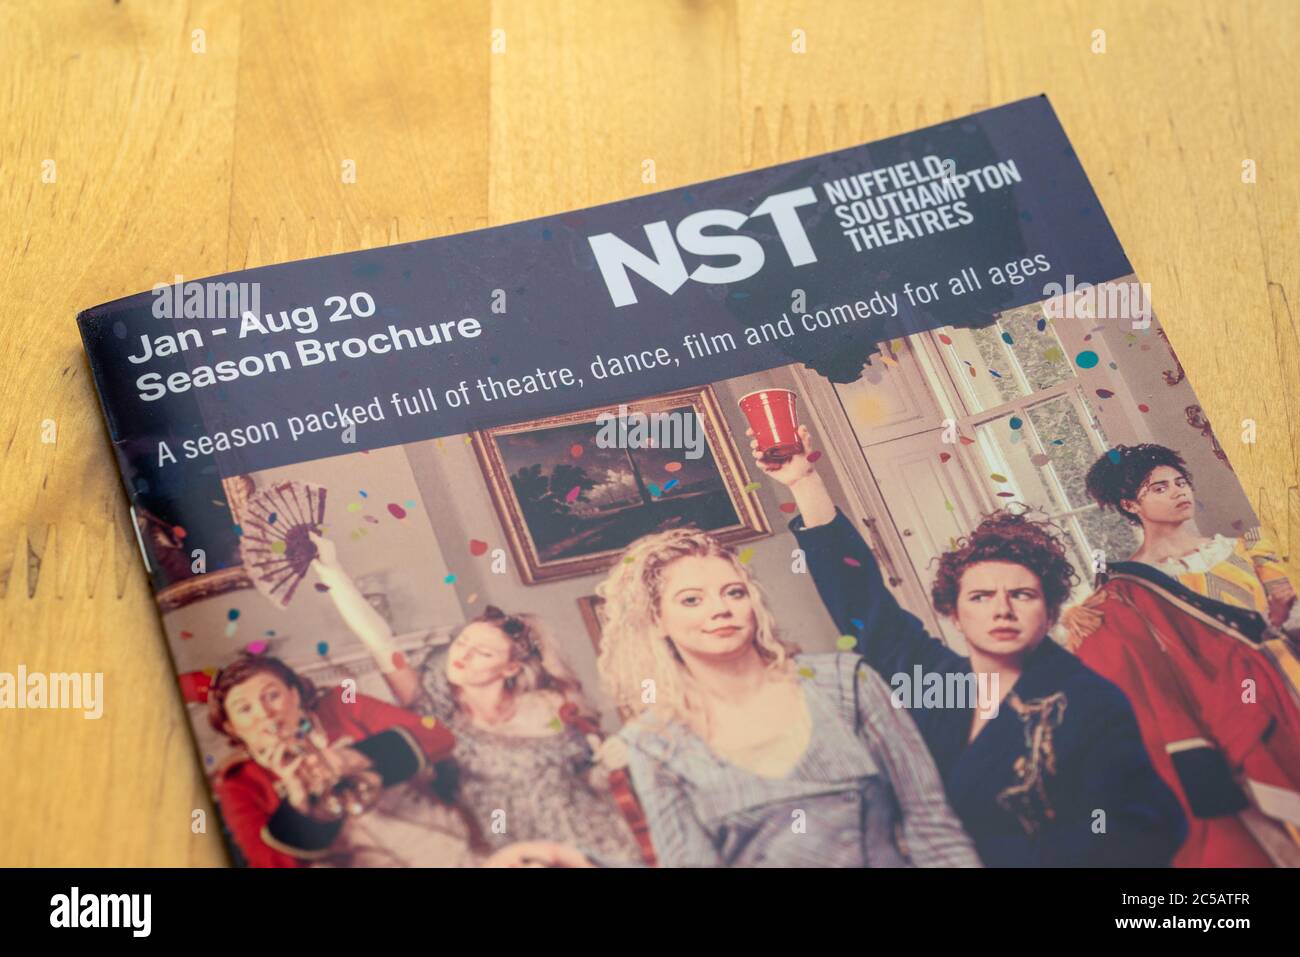 Jan - Aug 20 Spielzeit-Broschüre der Nuffield Southampton Theatres (NST) - die Theaterkummer ist seit kurzem wegen COVID 19 in die Verwaltung gegangen Stockfoto